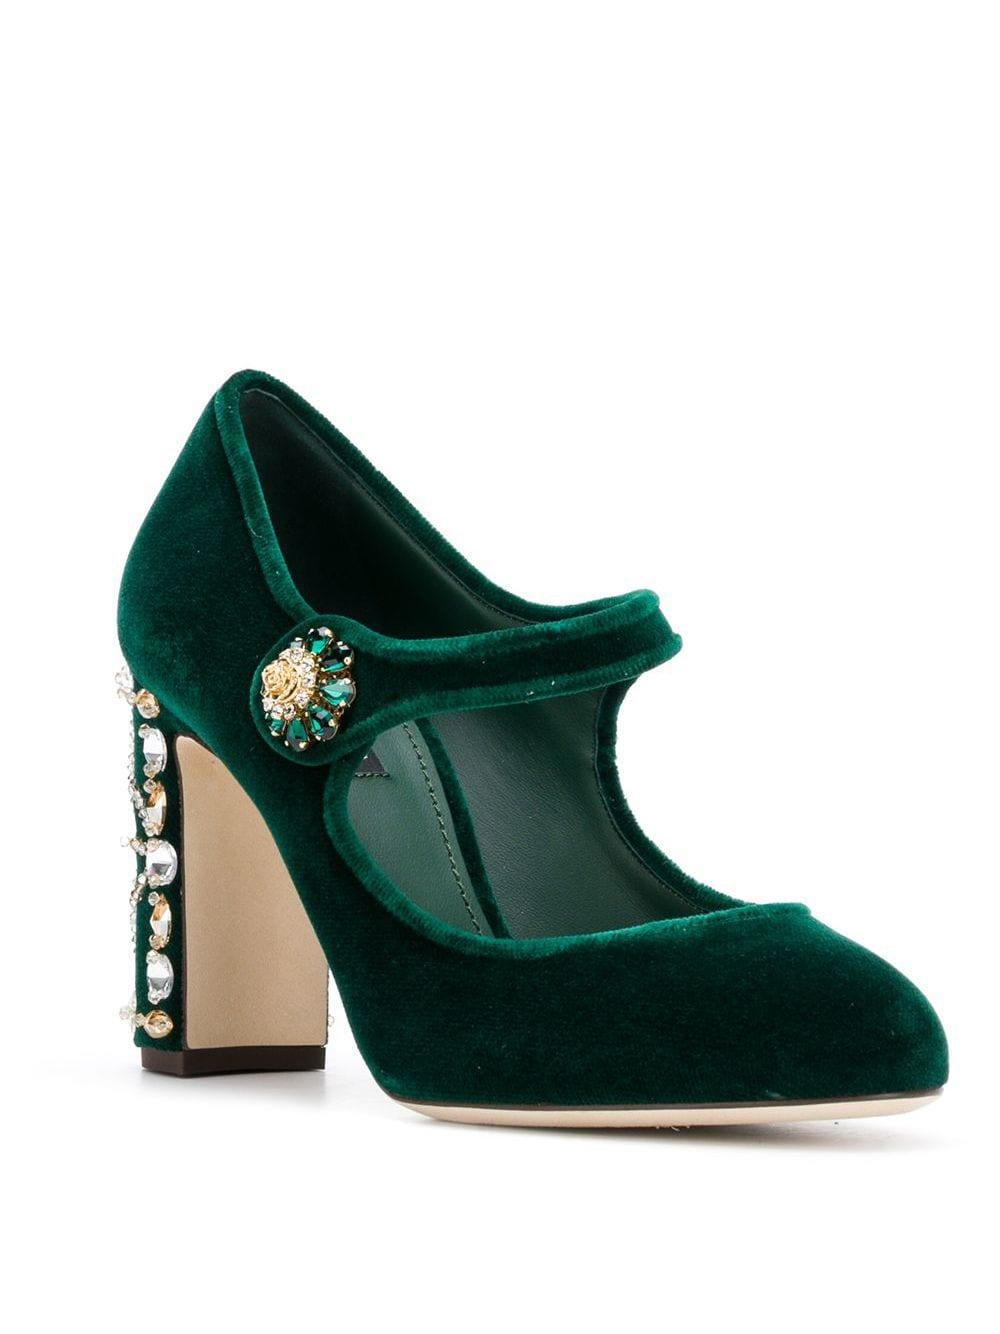 Dolce & Gabbana Velvet Mary Jane Pumps in Green | Lyst